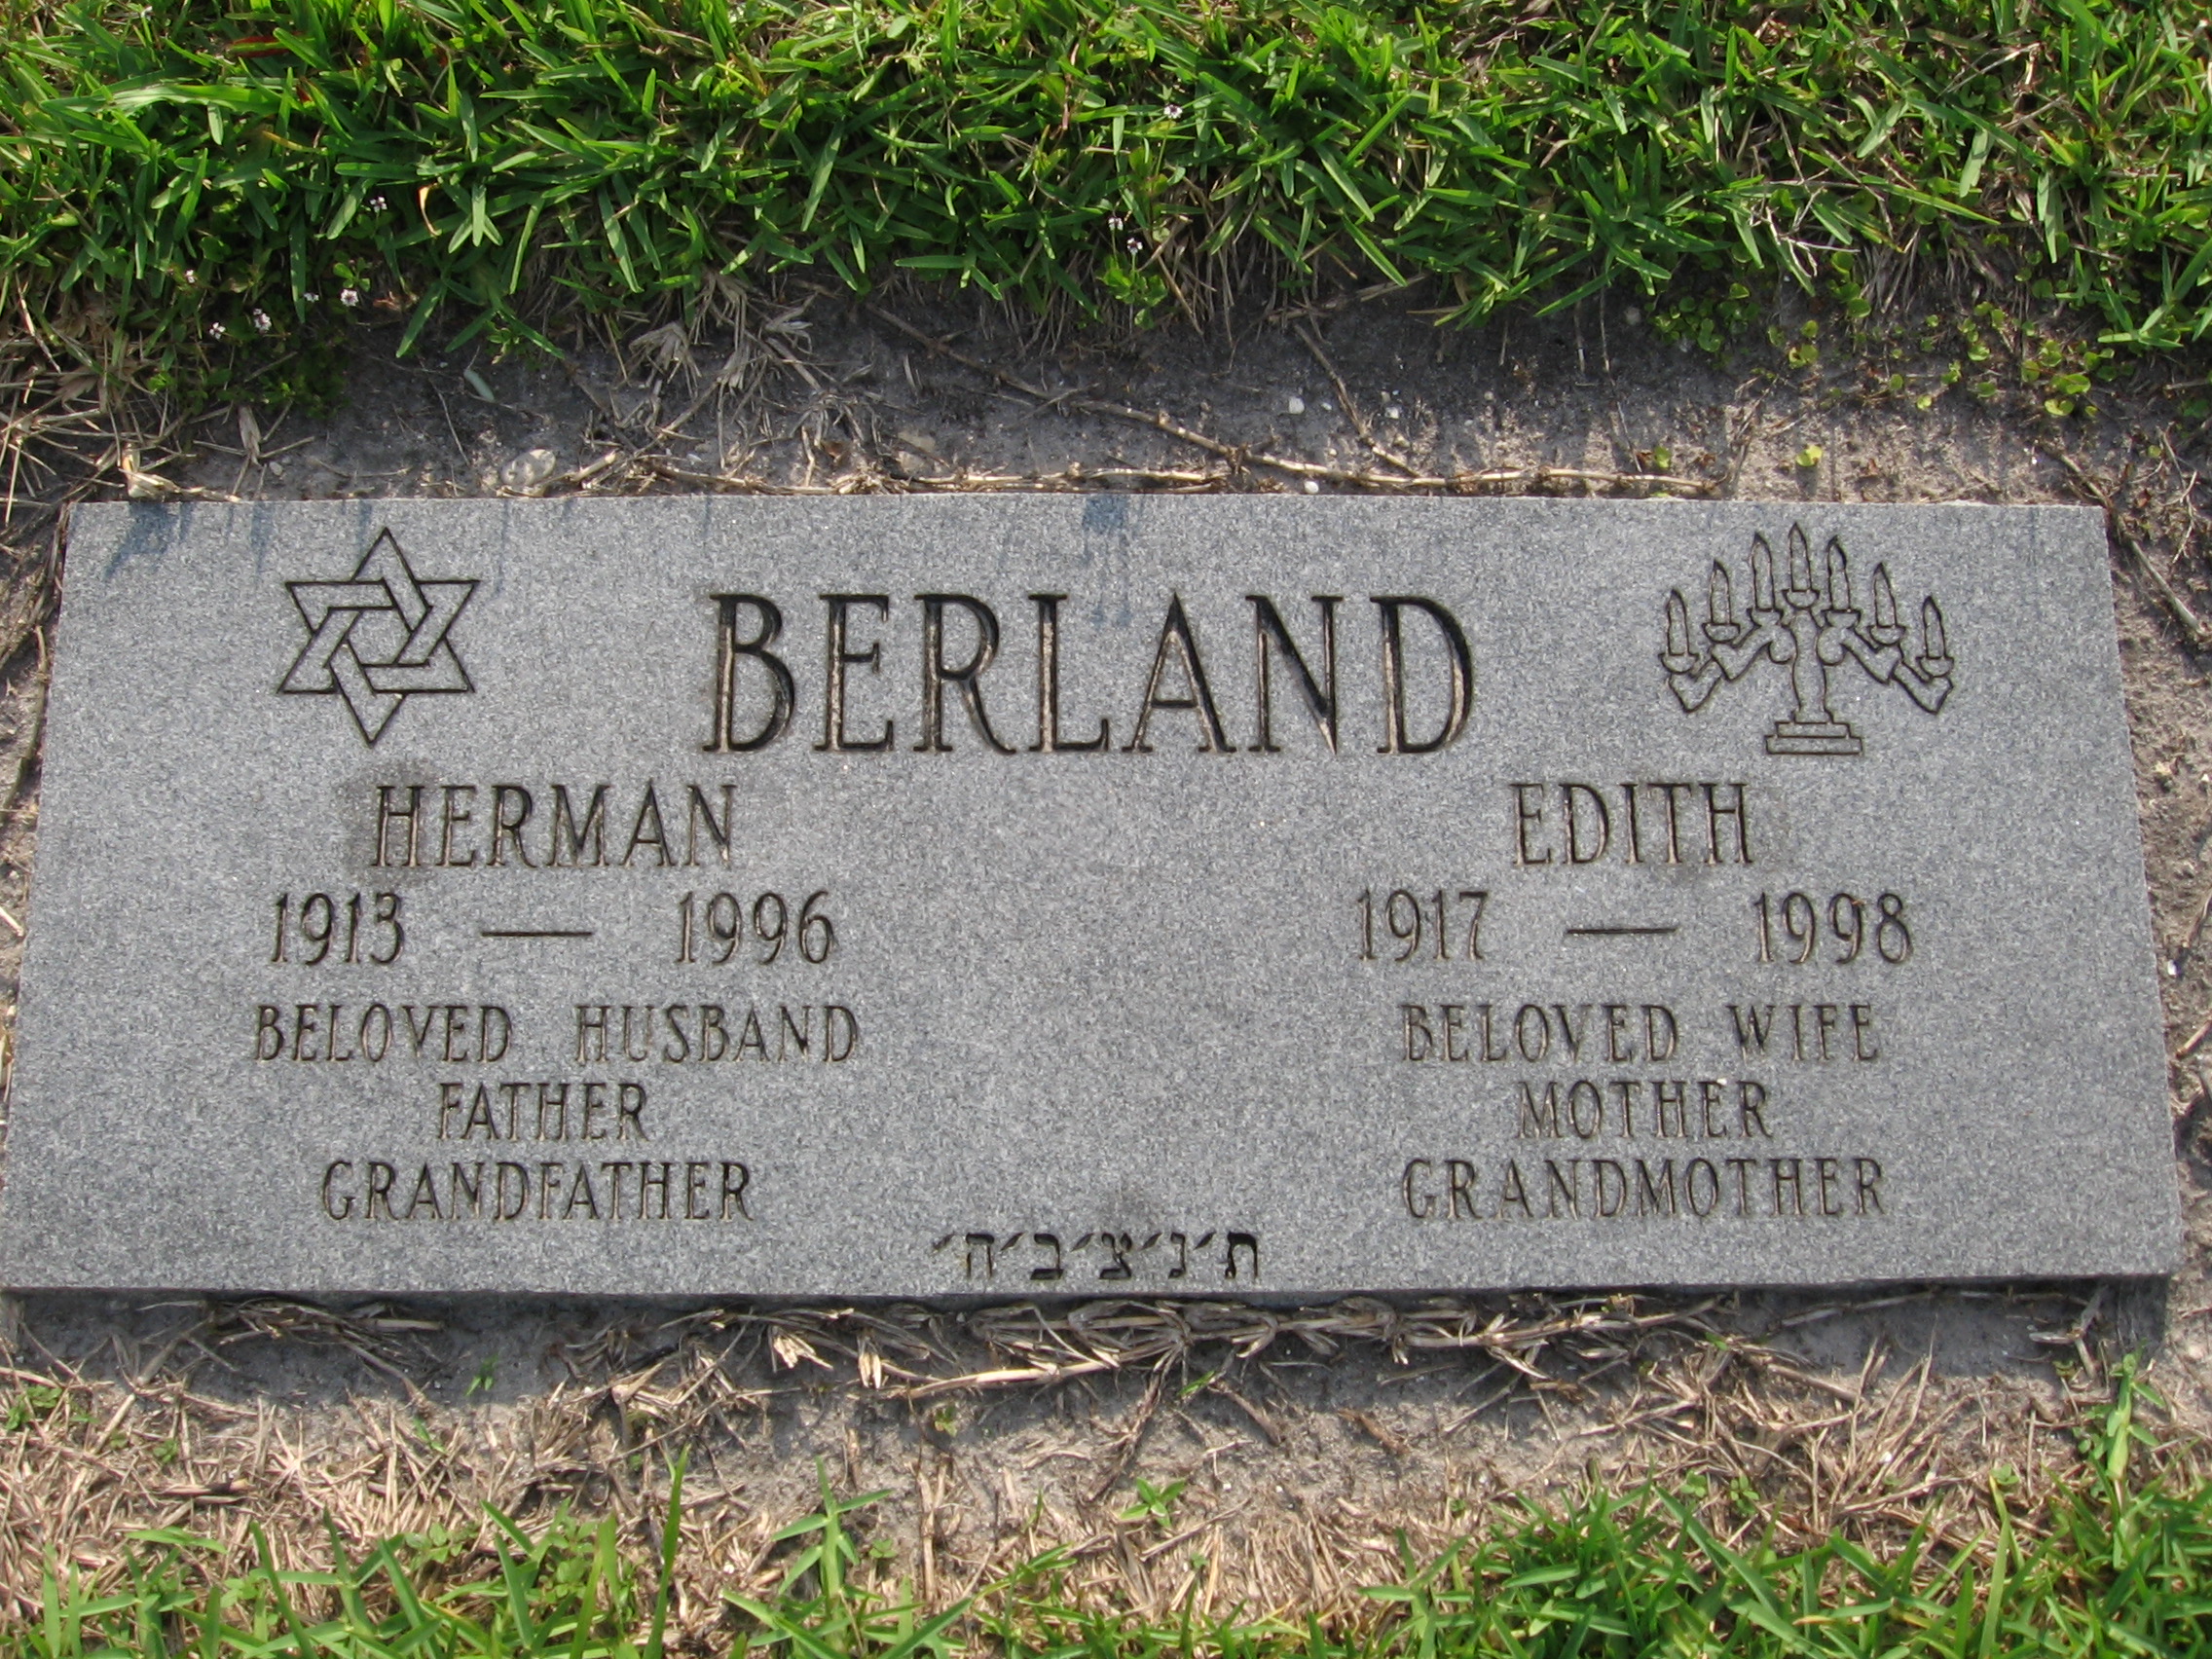 Herman Berland